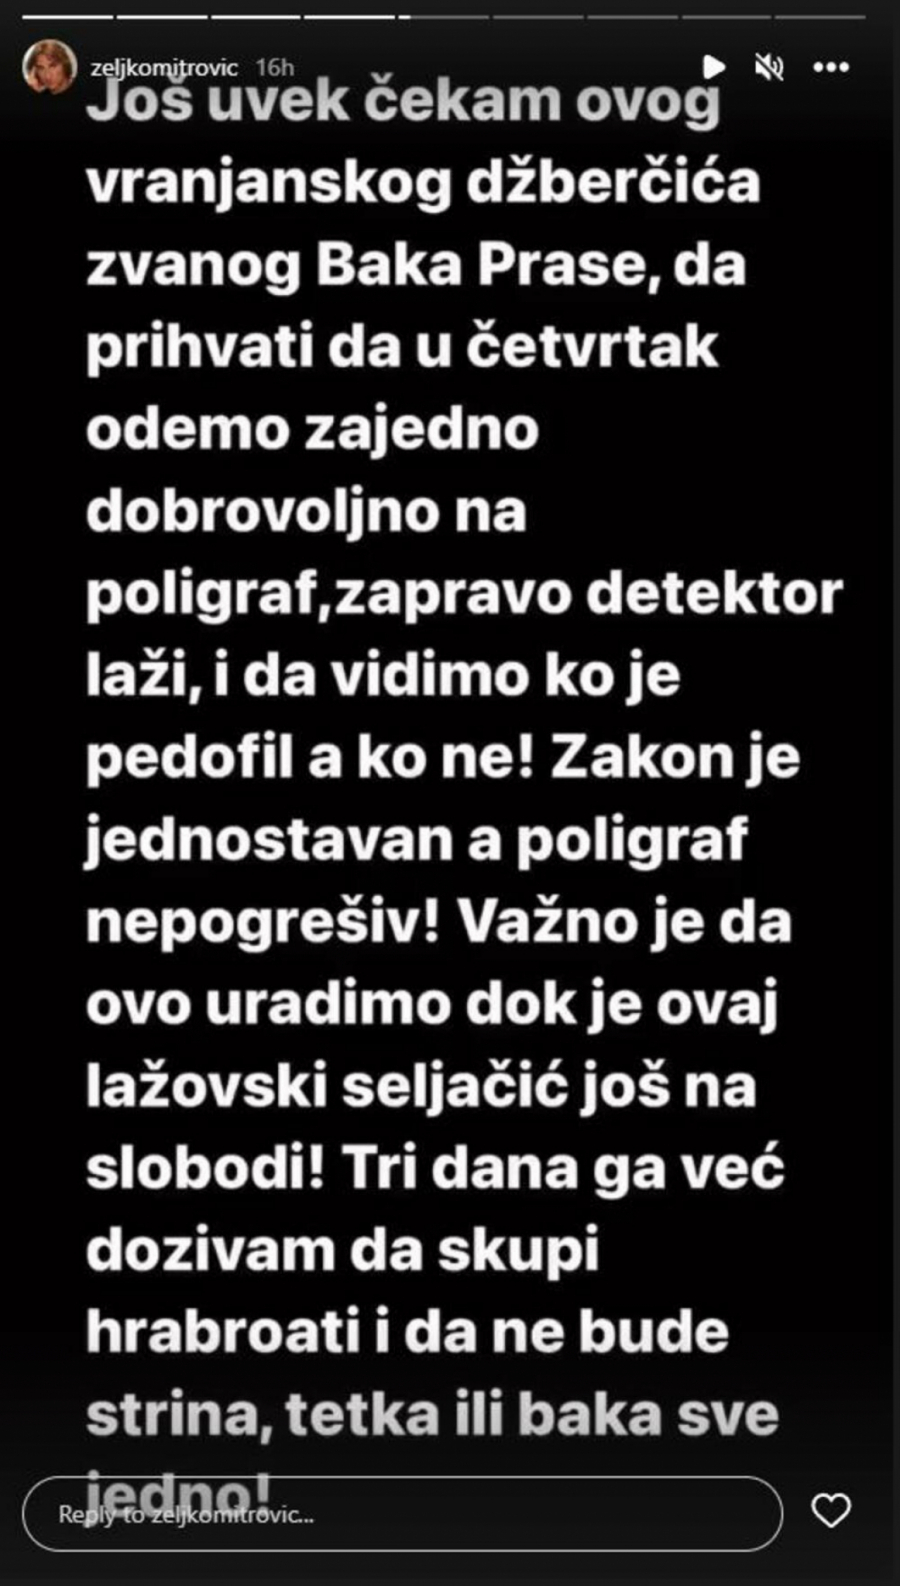 ČETVRTAK POLIGRAF DOK SI JOŠ NA SLOBODI Željko Mitrović obelodanio kada se suočava sa Baka Prasetom, spomenuo i pedofiliju (FOTO)